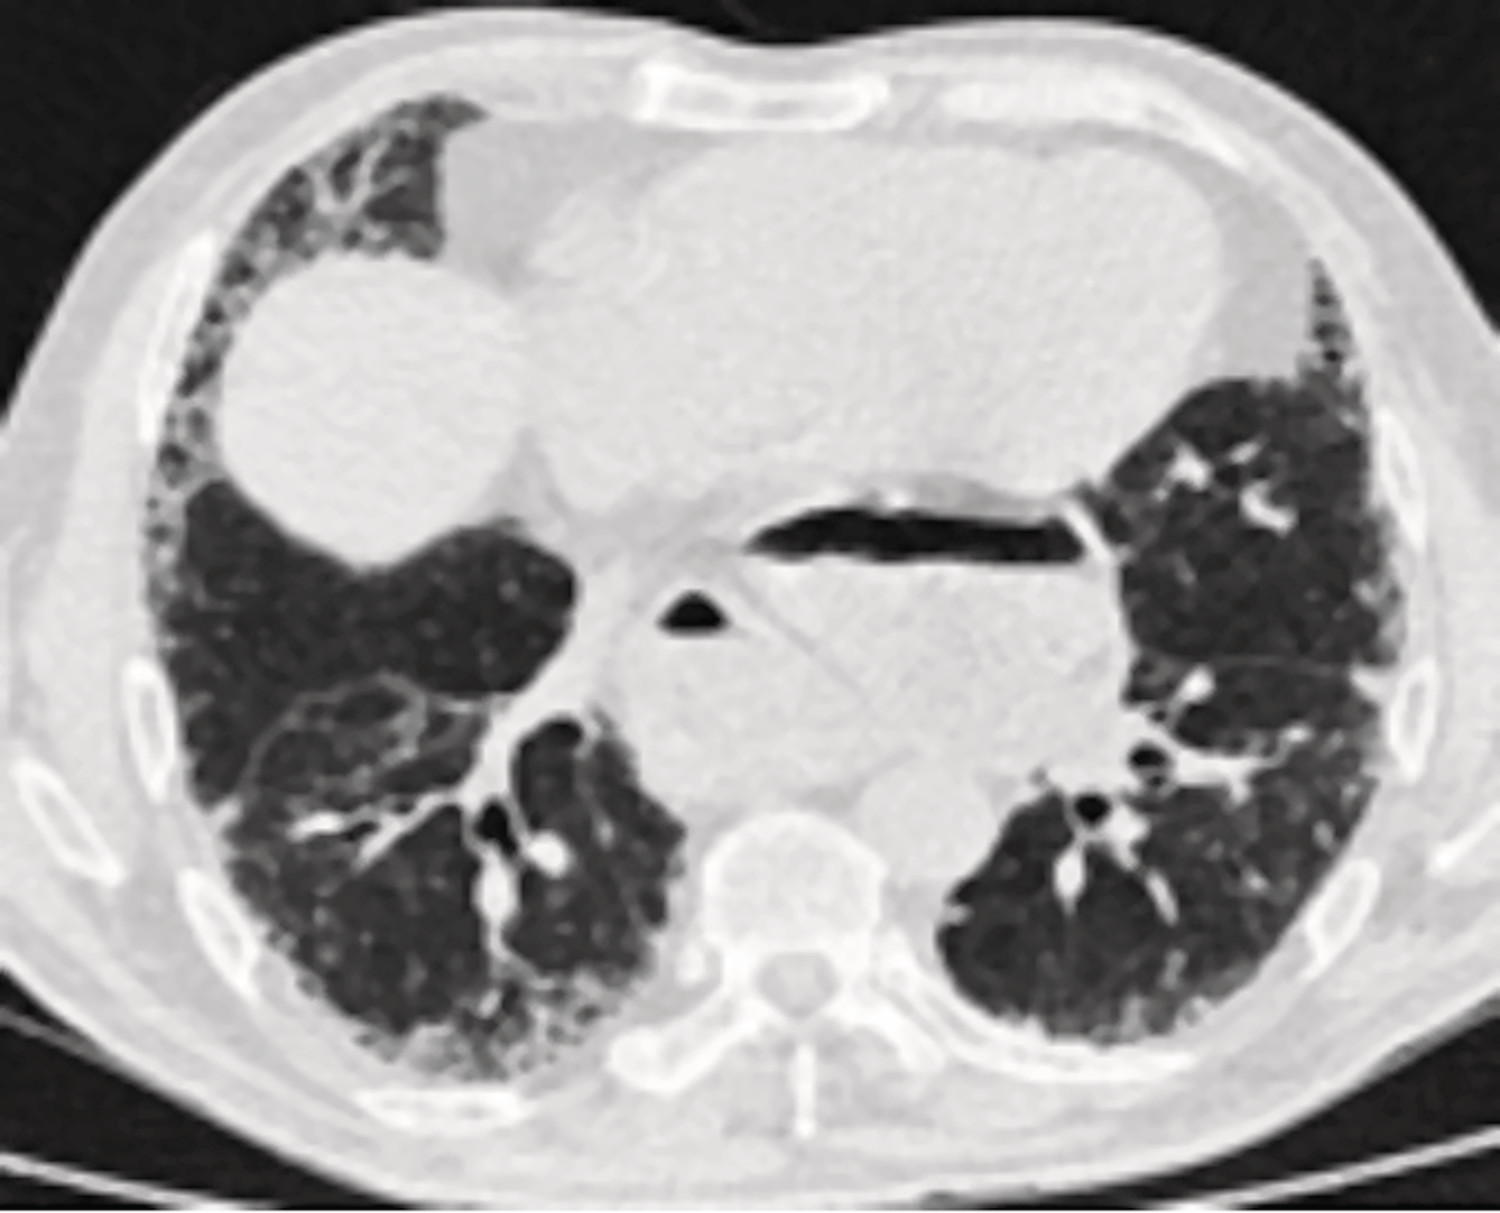 Le reflux gastro-œsophagien au cours de la fibrose pulmonaire idiopathique : cause, conséquence, ou coïncidence ? - Figure